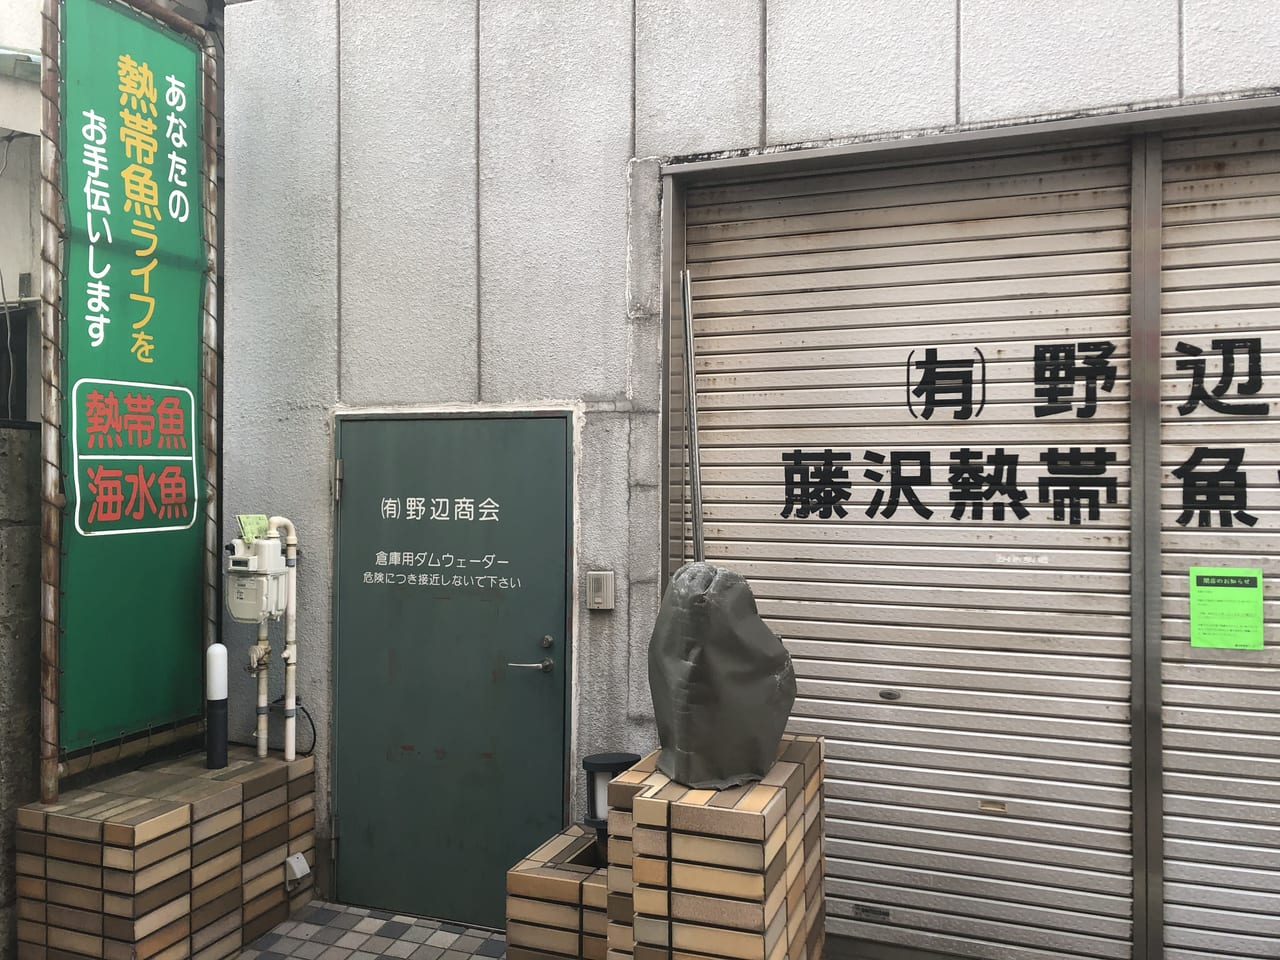 藤沢市 50年の歴史に幕 藤沢熱帯魚センター が閉店していました え あっちもこっちも 号外net 藤沢市